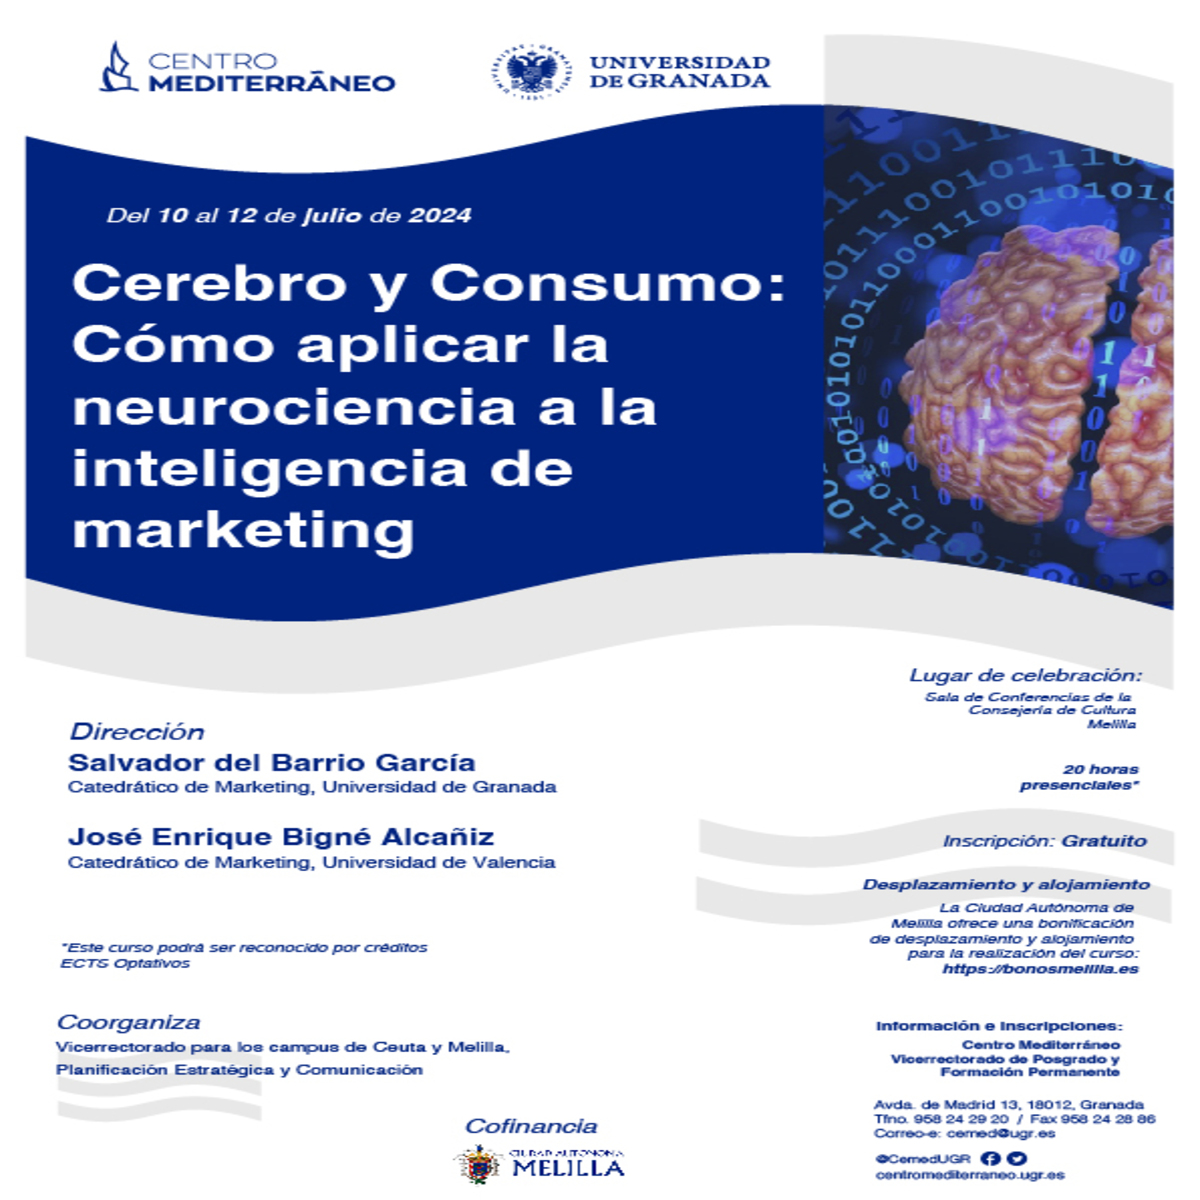 Cerebro y Consumo: Cómo aplicar la neurociencia a la inteligencia de marketing